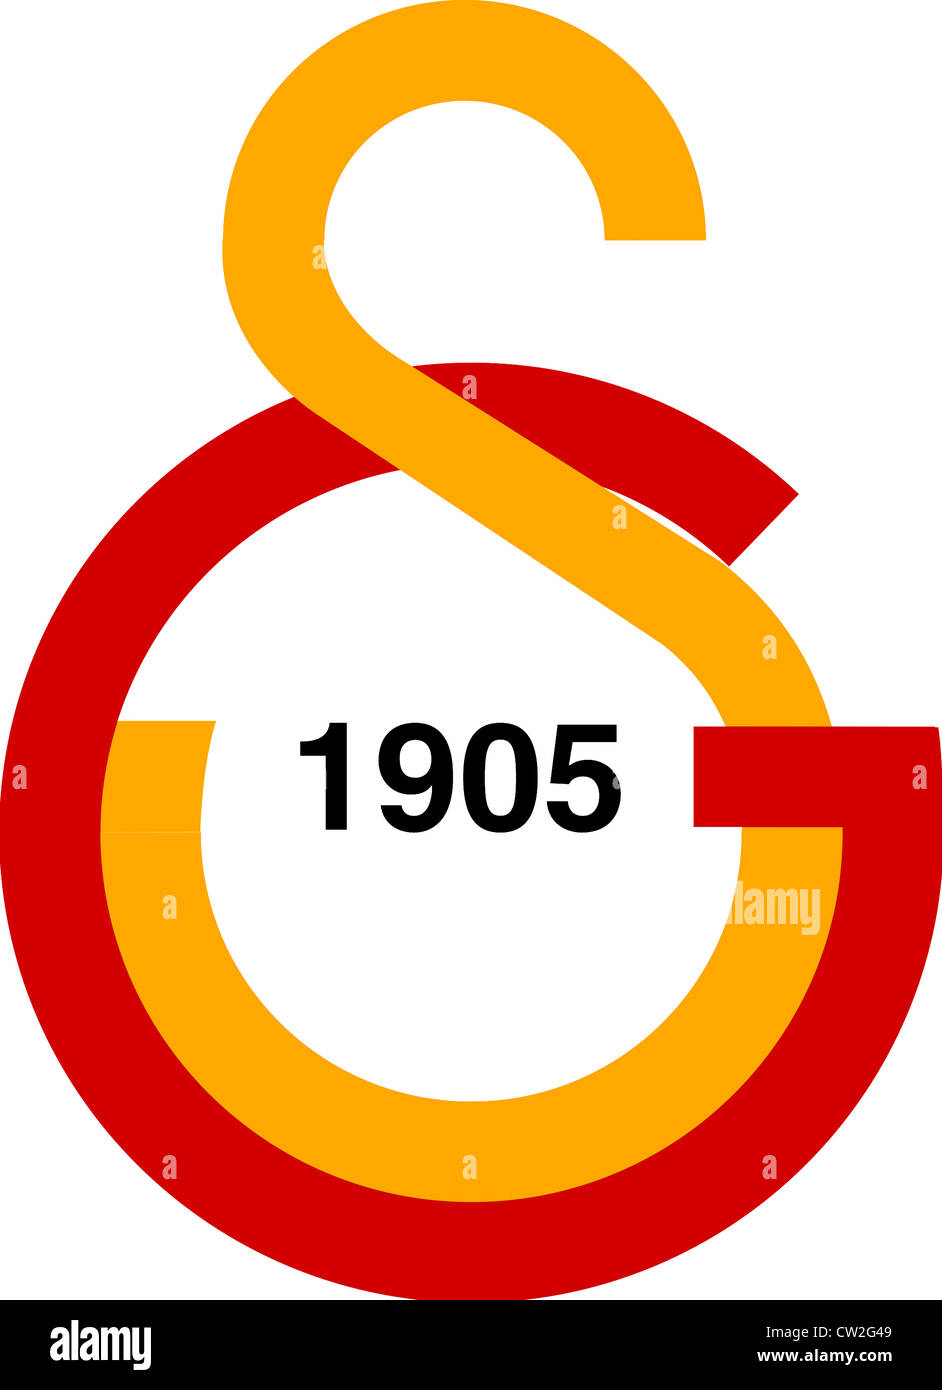 Logo der türkischen Fußballmannschaft Galatasaray Istanbul. Stockfoto